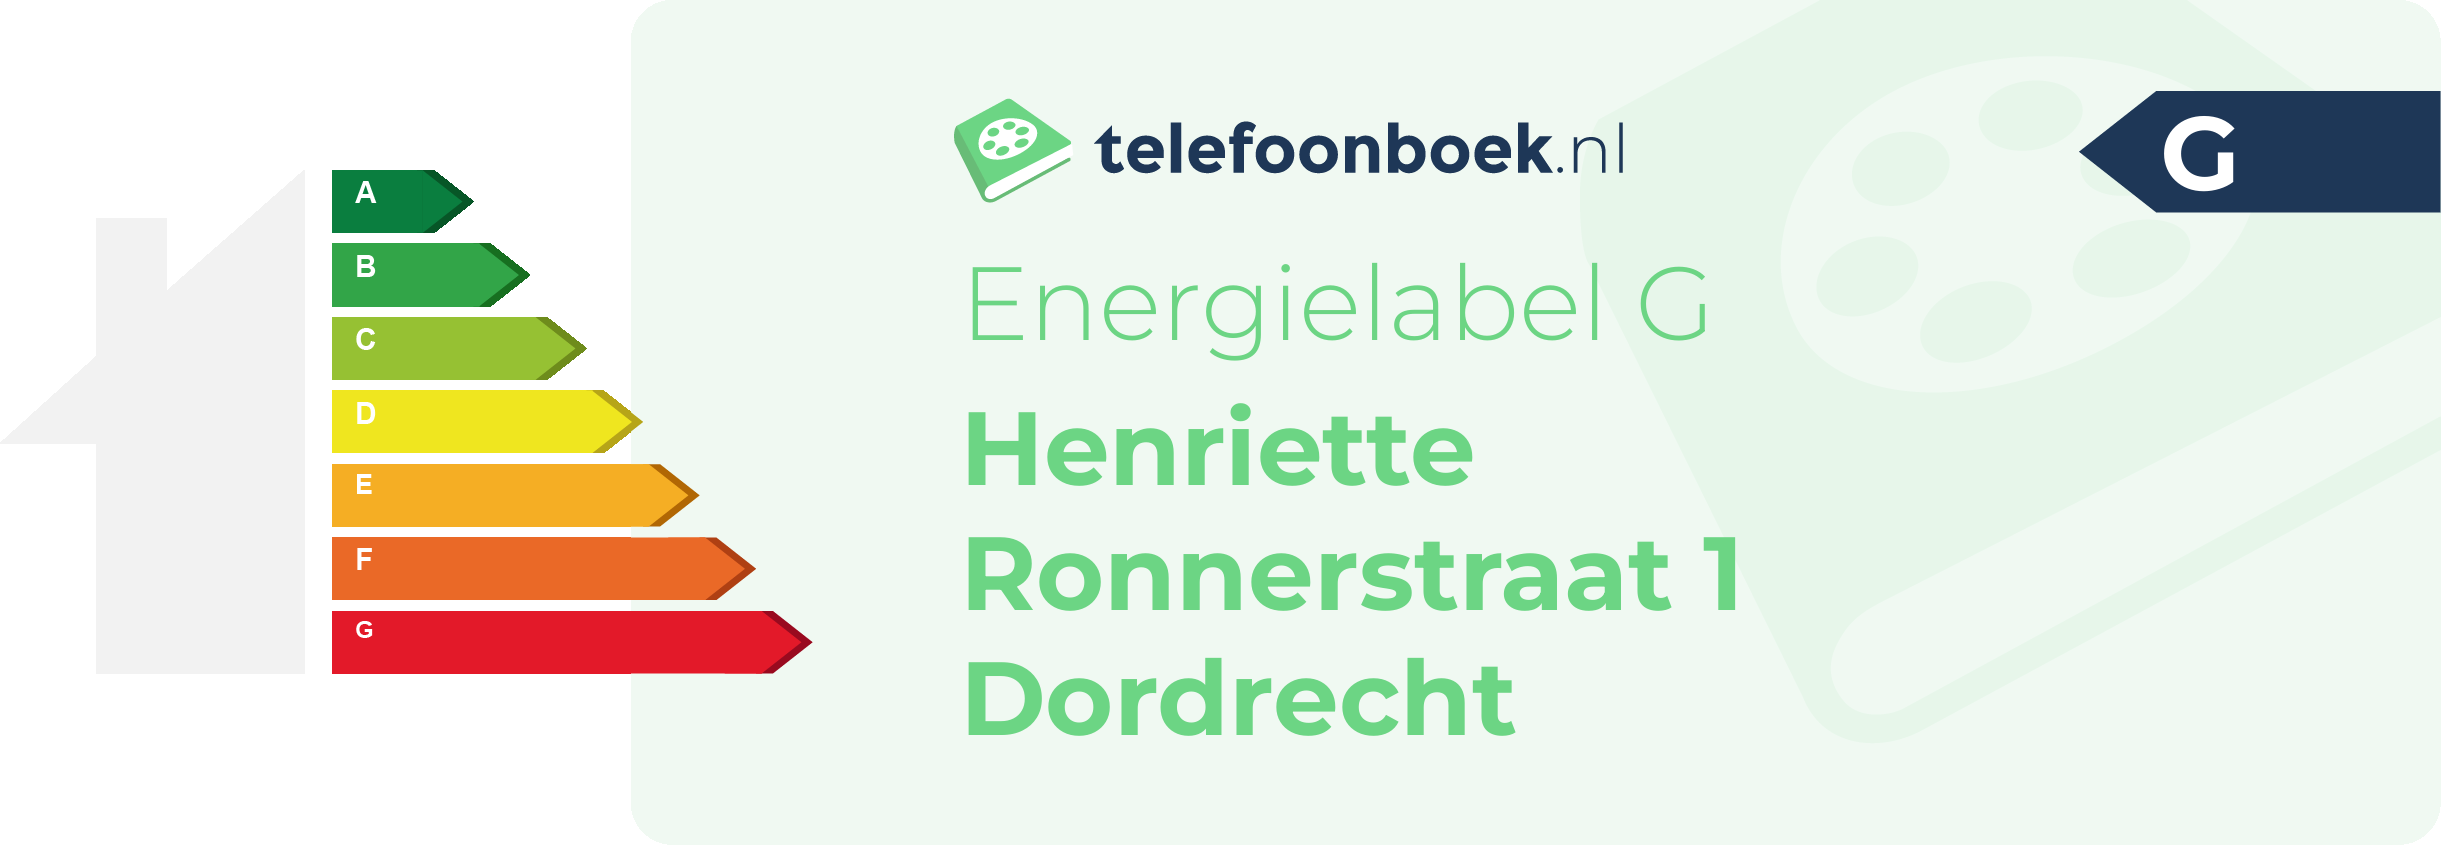 Energielabel Henriette Ronnerstraat 1 Dordrecht